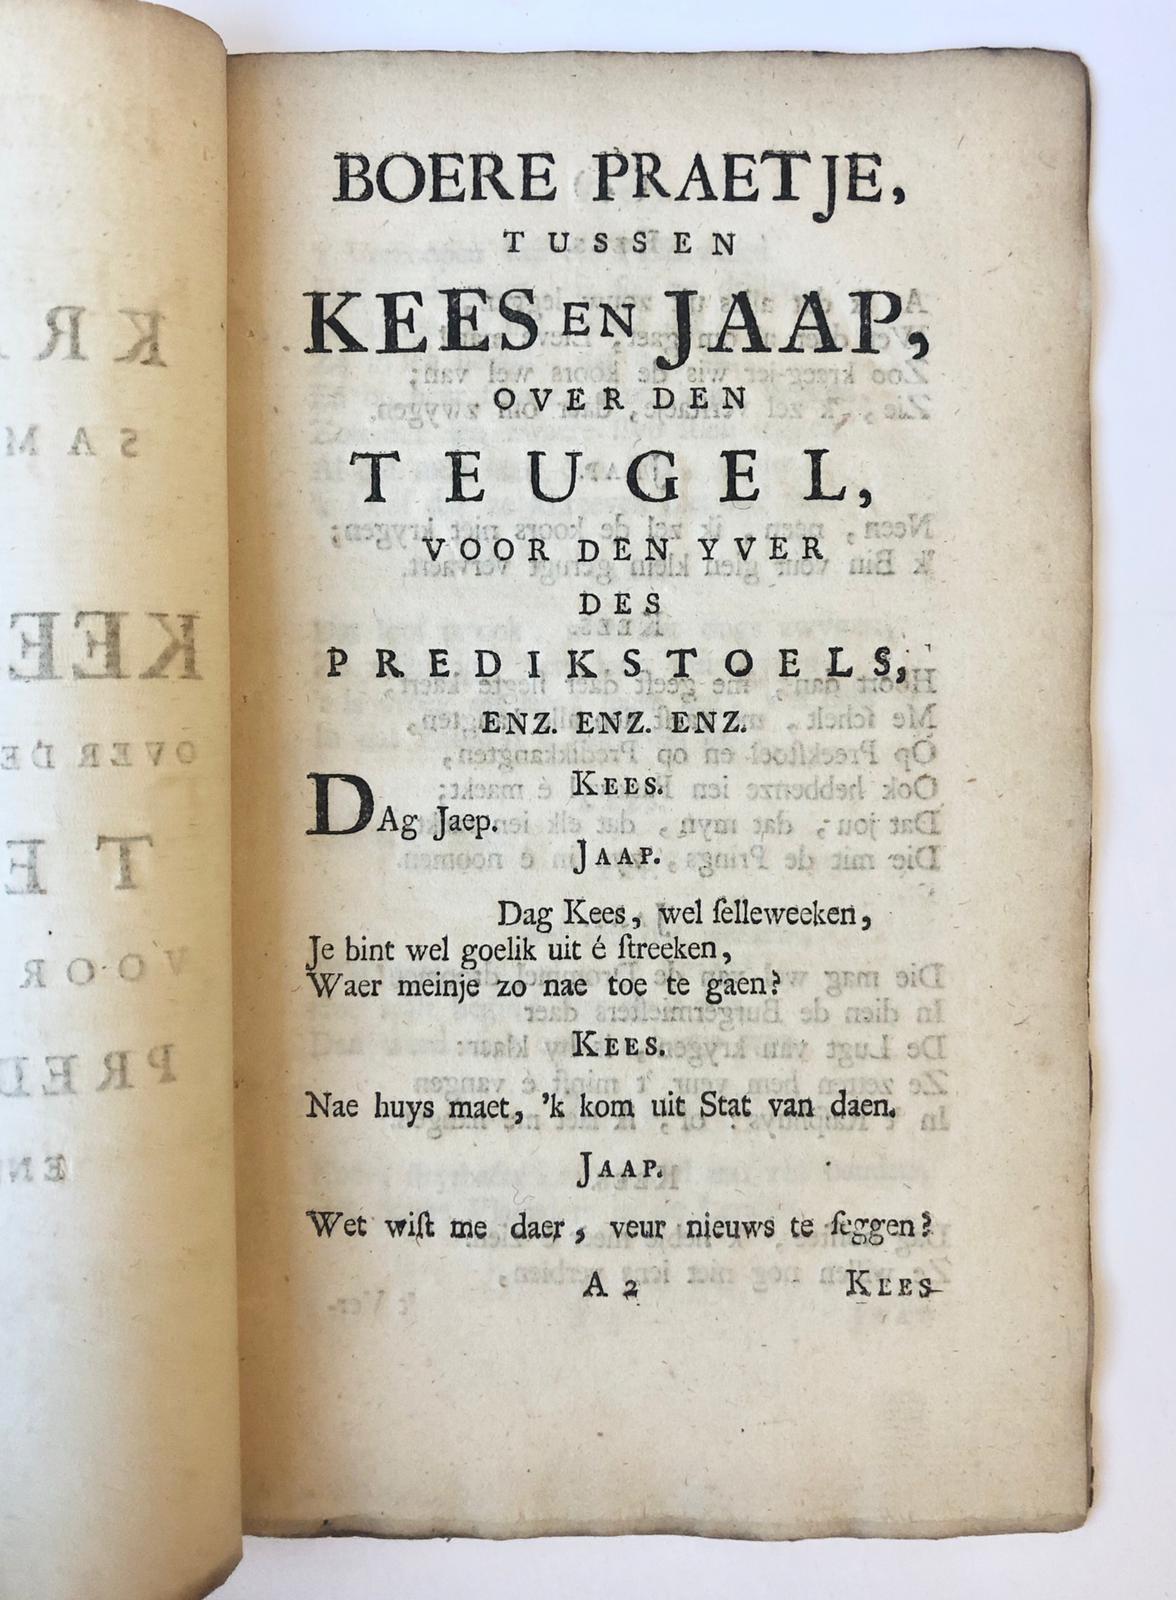 [Rotterdam, [1748]] Kralingse samenspraak, tussen Kees en Jaap, over den zoo genoemden teugel, voor den yver des predikstoels, Enz. Enz. Enz., [s.l., s.n.], [1748], 23 pp.